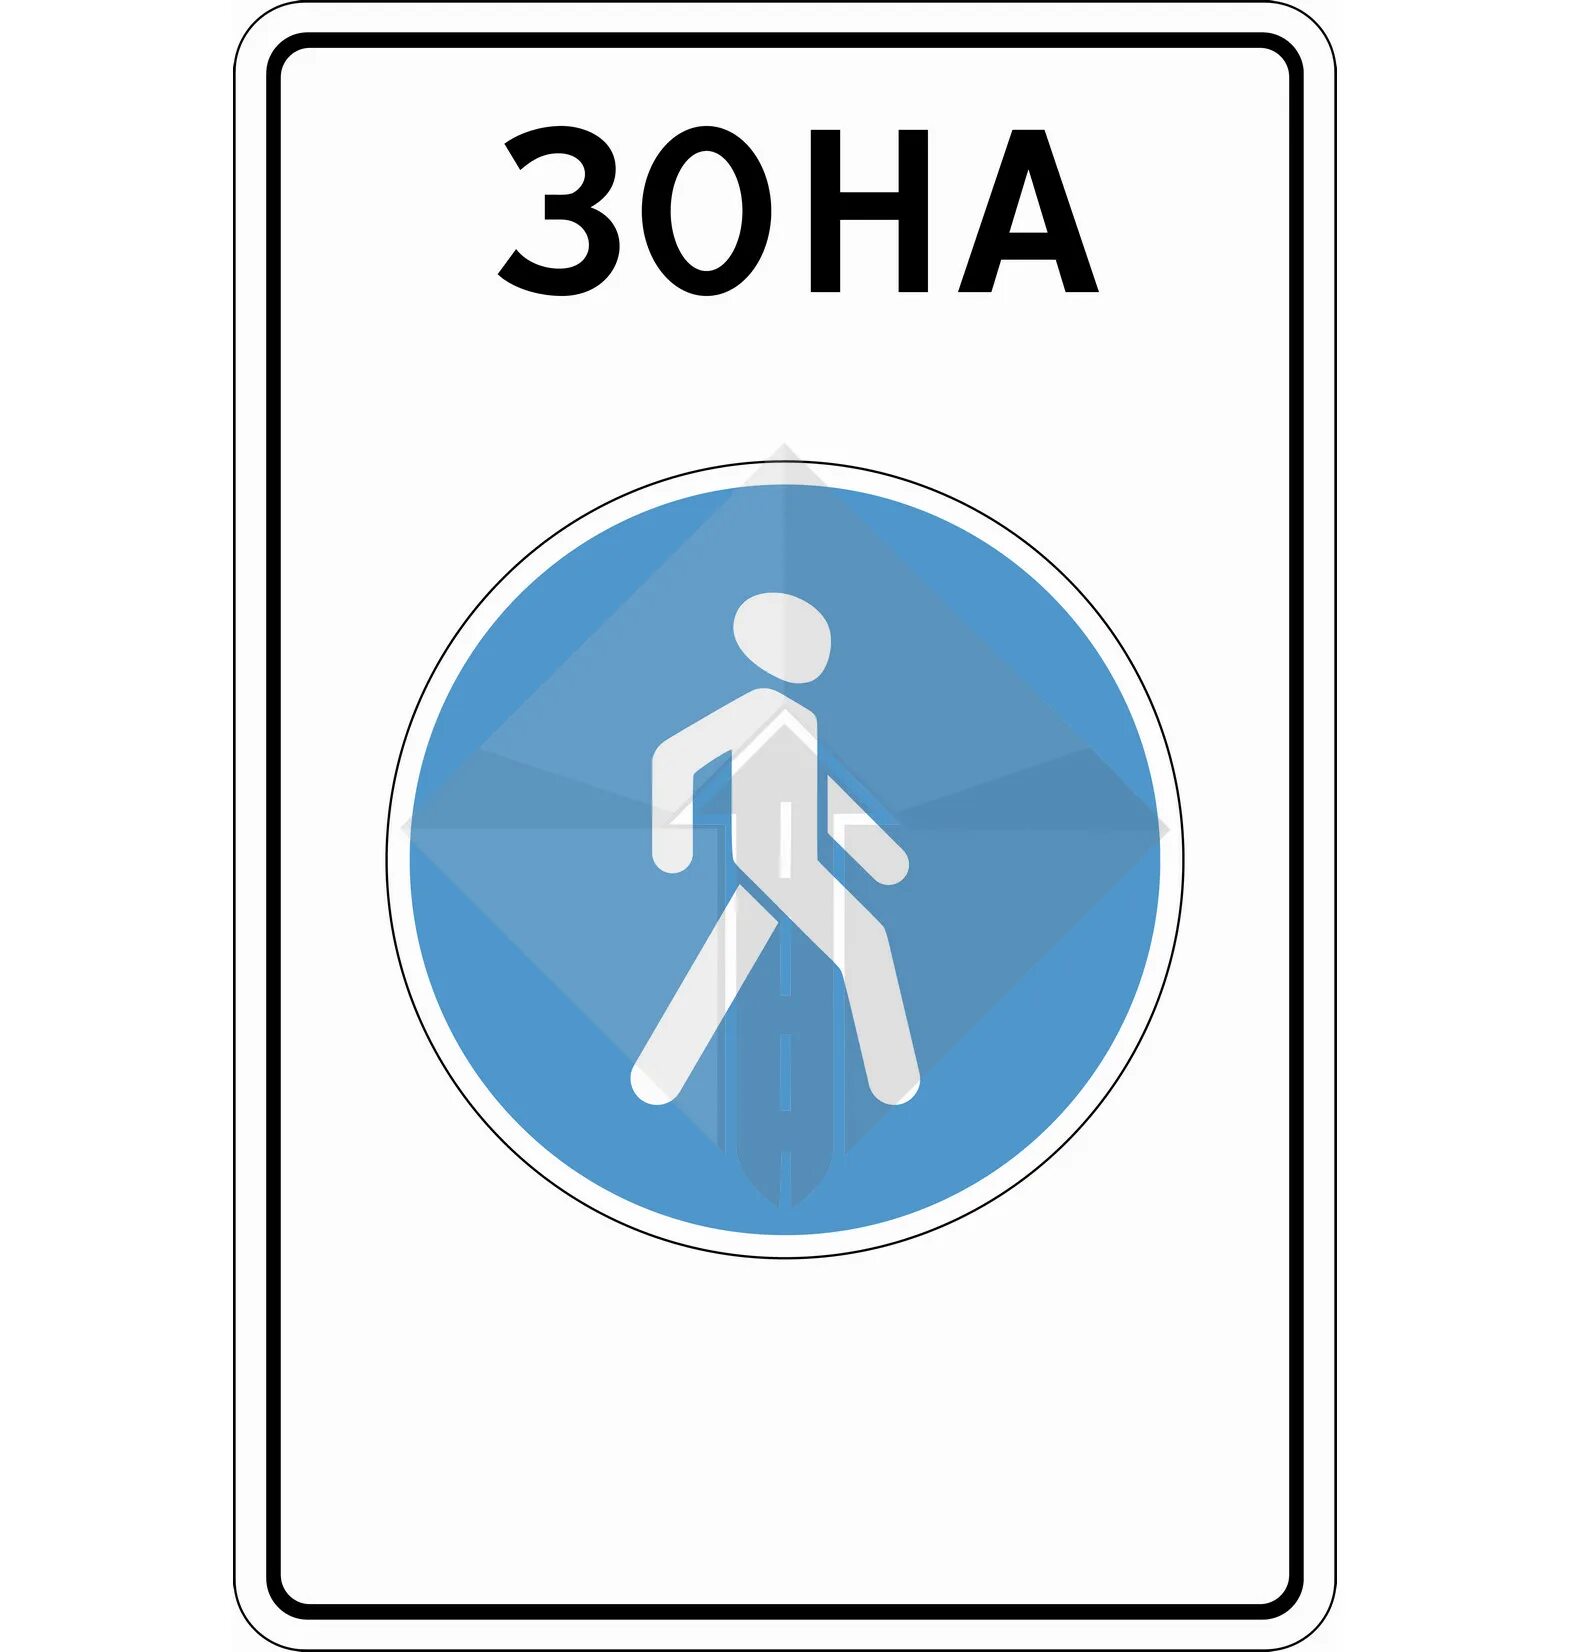 Знак пешеходная зона. ПДД 5.33 пешеходная зона. Знак 5.33 пешеходная зона. Знак зона. Знаки для пешеходов.